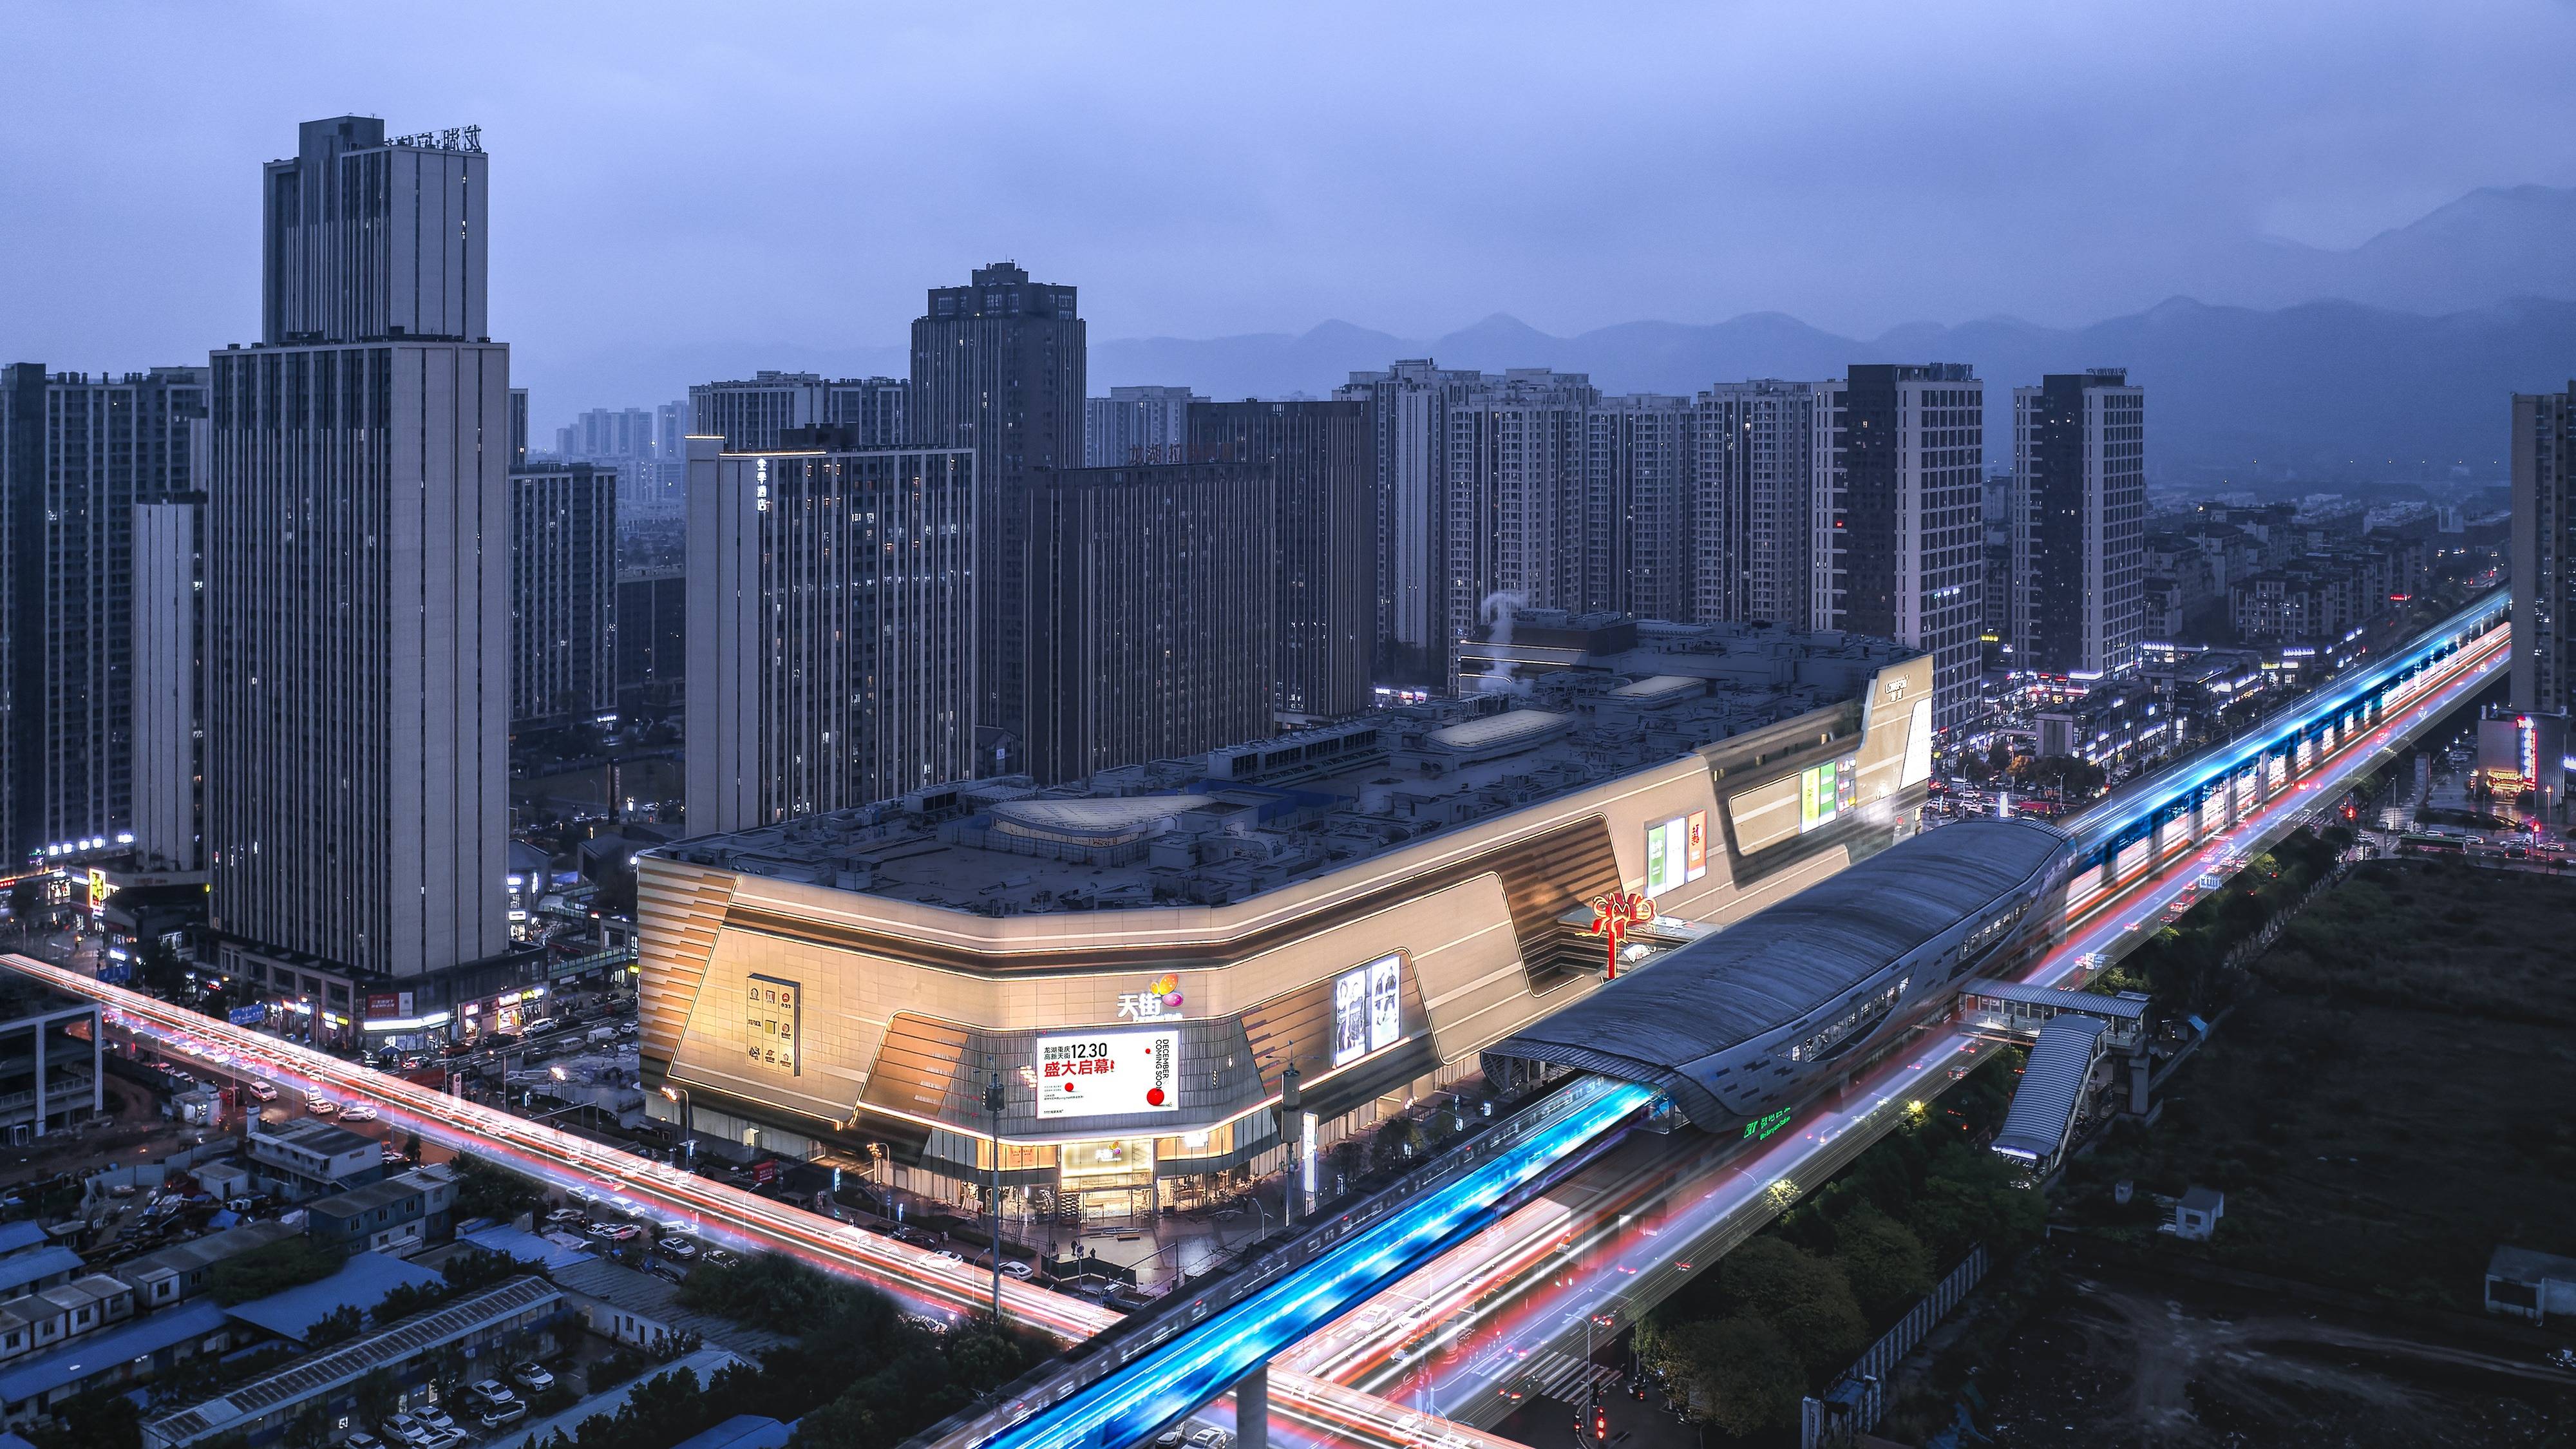 重庆龙湖天街购物中心图片